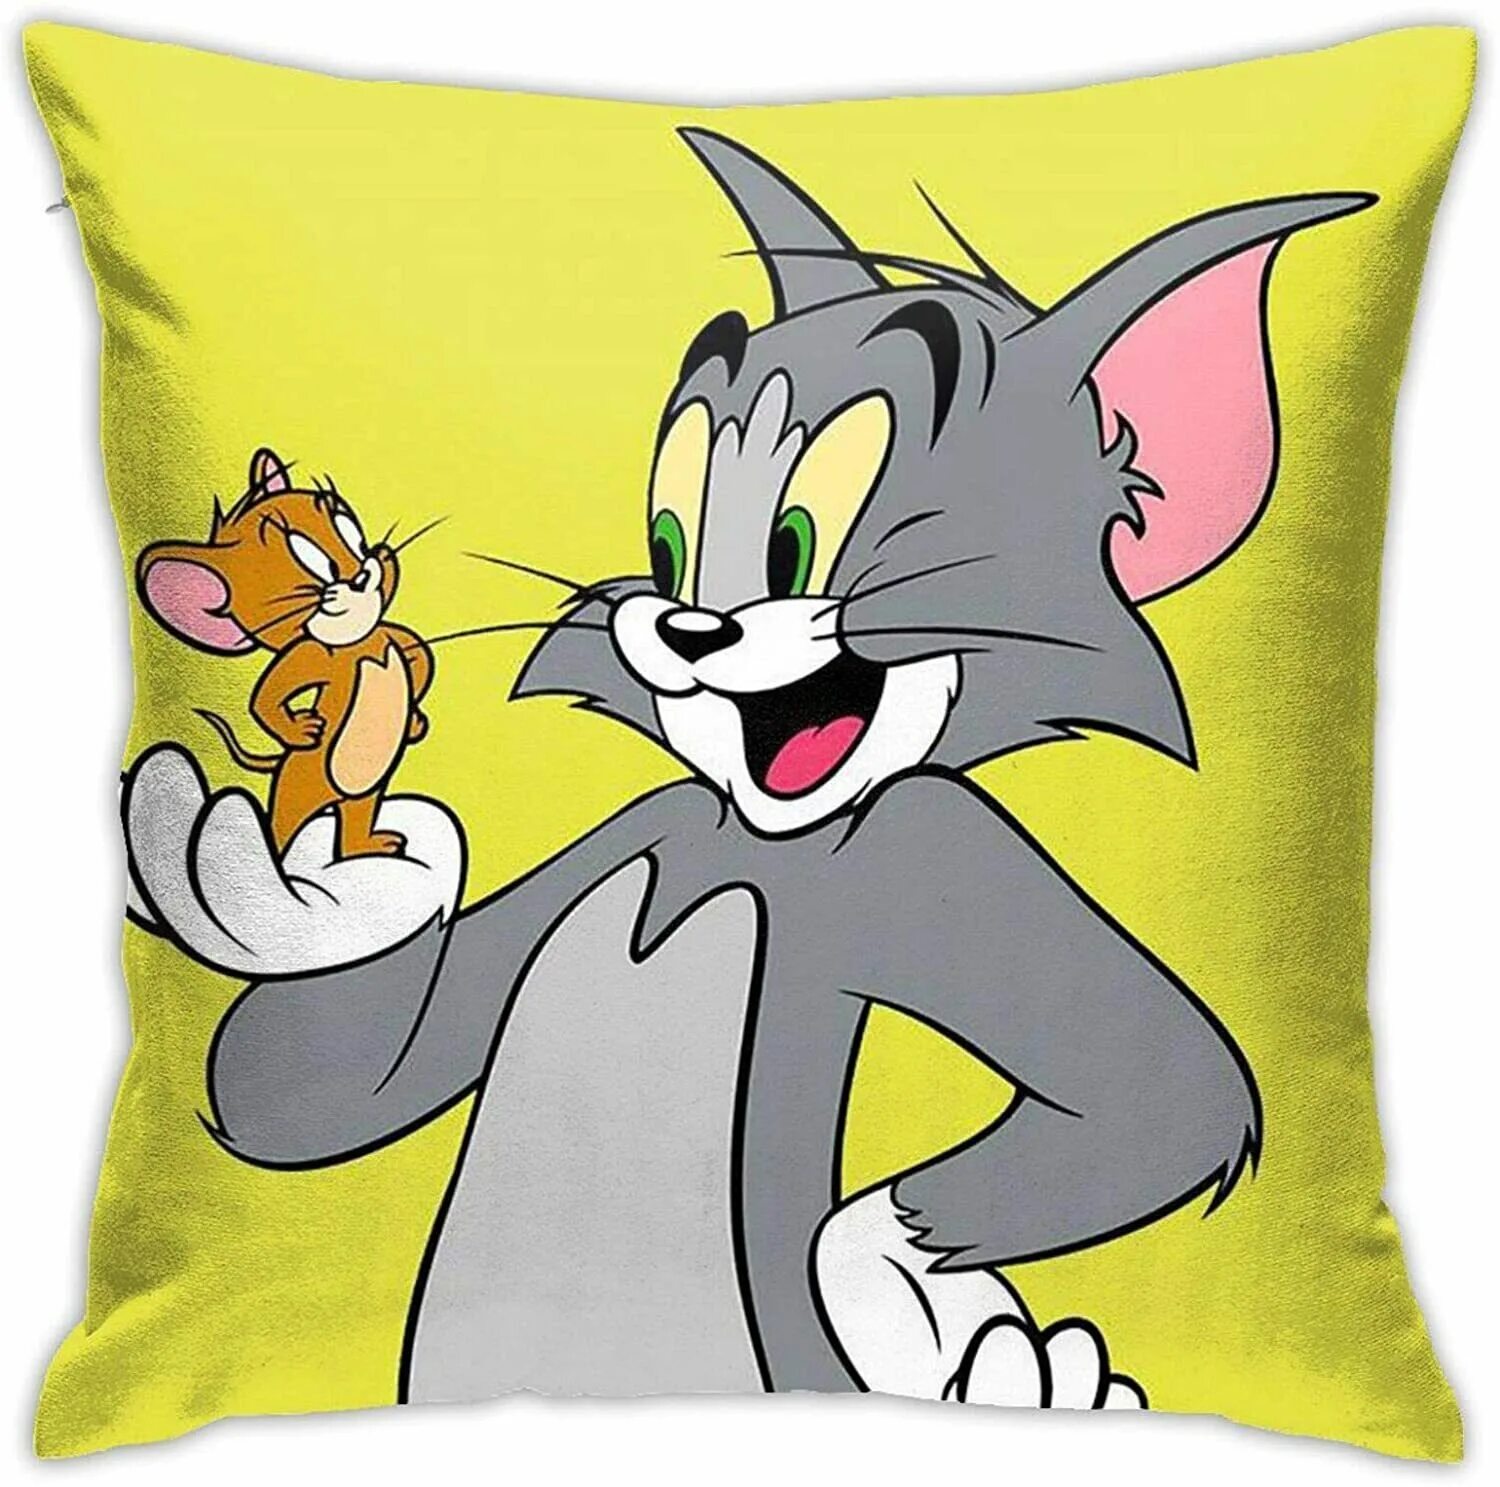 Tom and Jerry. Том и Джерри Джерри. Том из том и Джерри. Том и Джерри герои. Jerry том и джерри